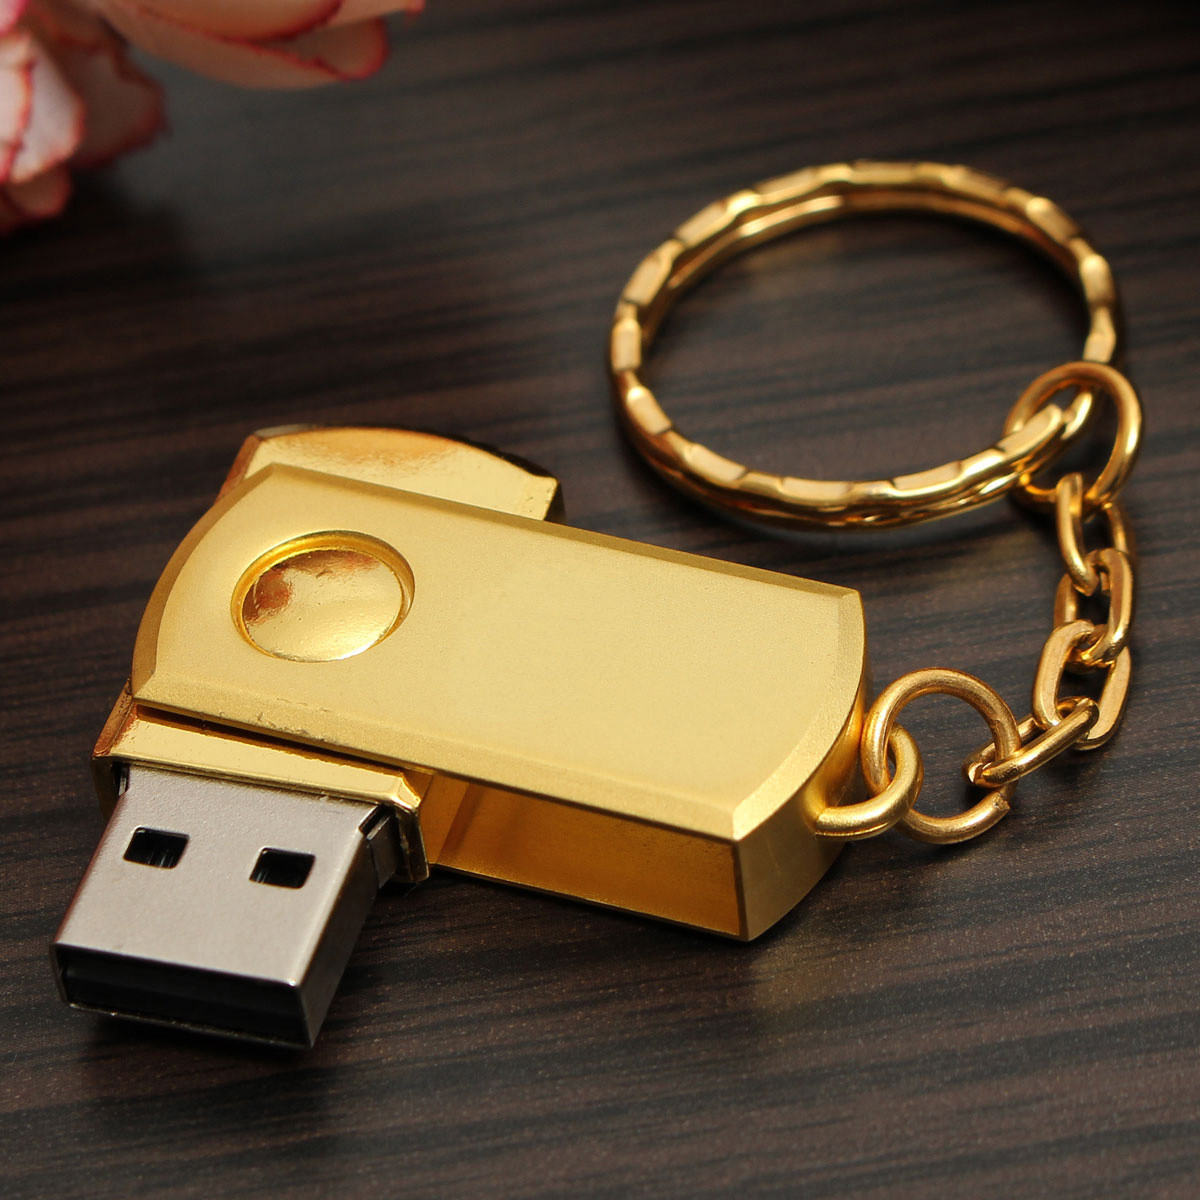 Купить флешку на 2. Переносная флешка. USB Stick. Флешка диск. USB Disk изнутри.